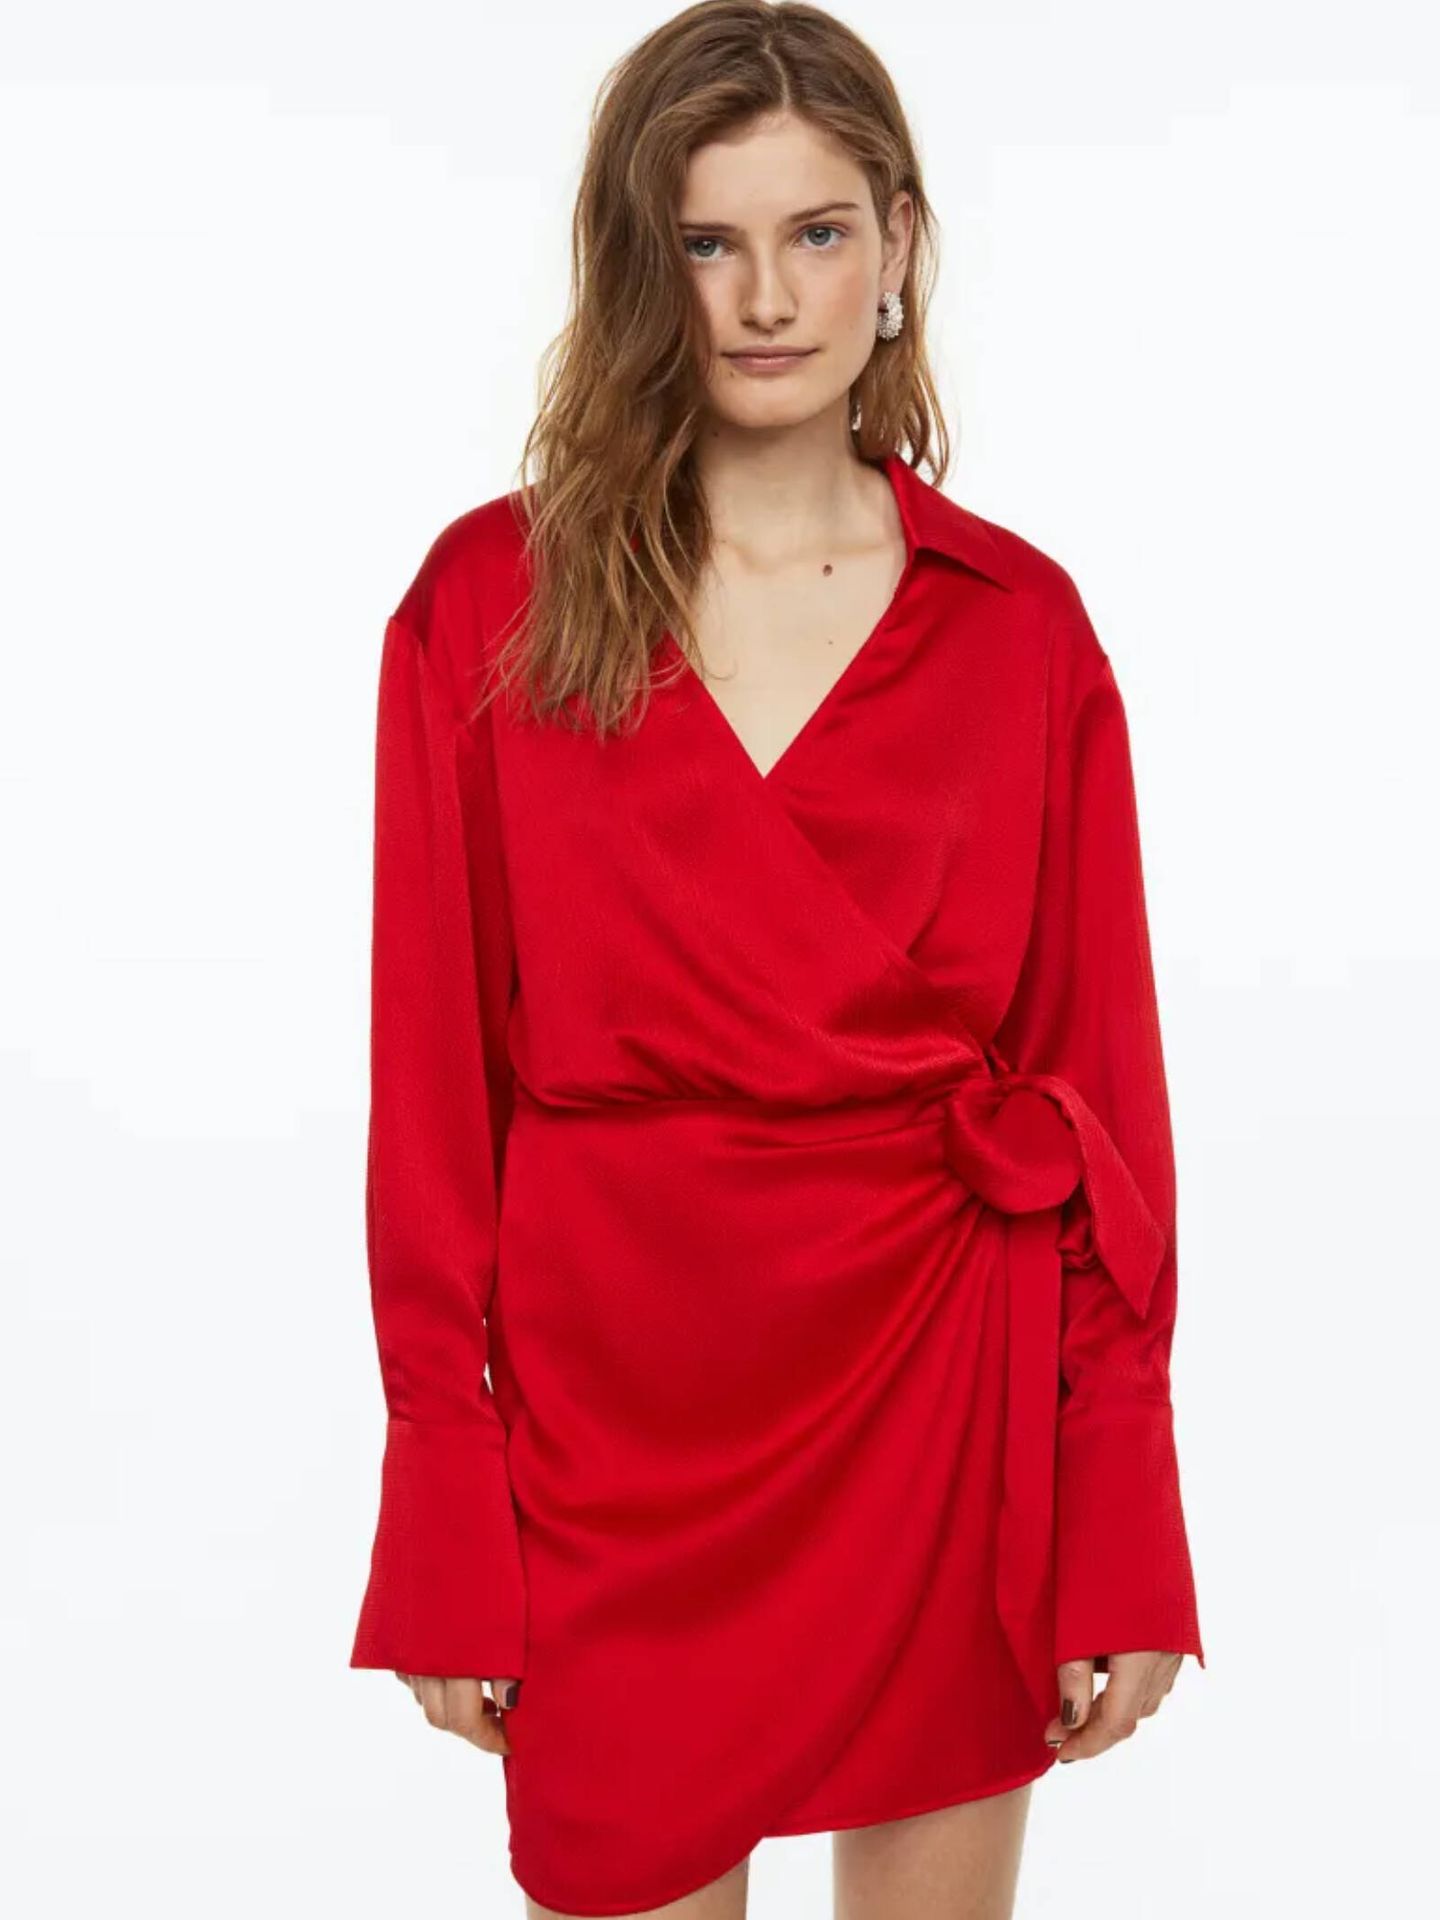 Todo al rojo con estos vestidos y pantalones de H&M. (Cortesía)